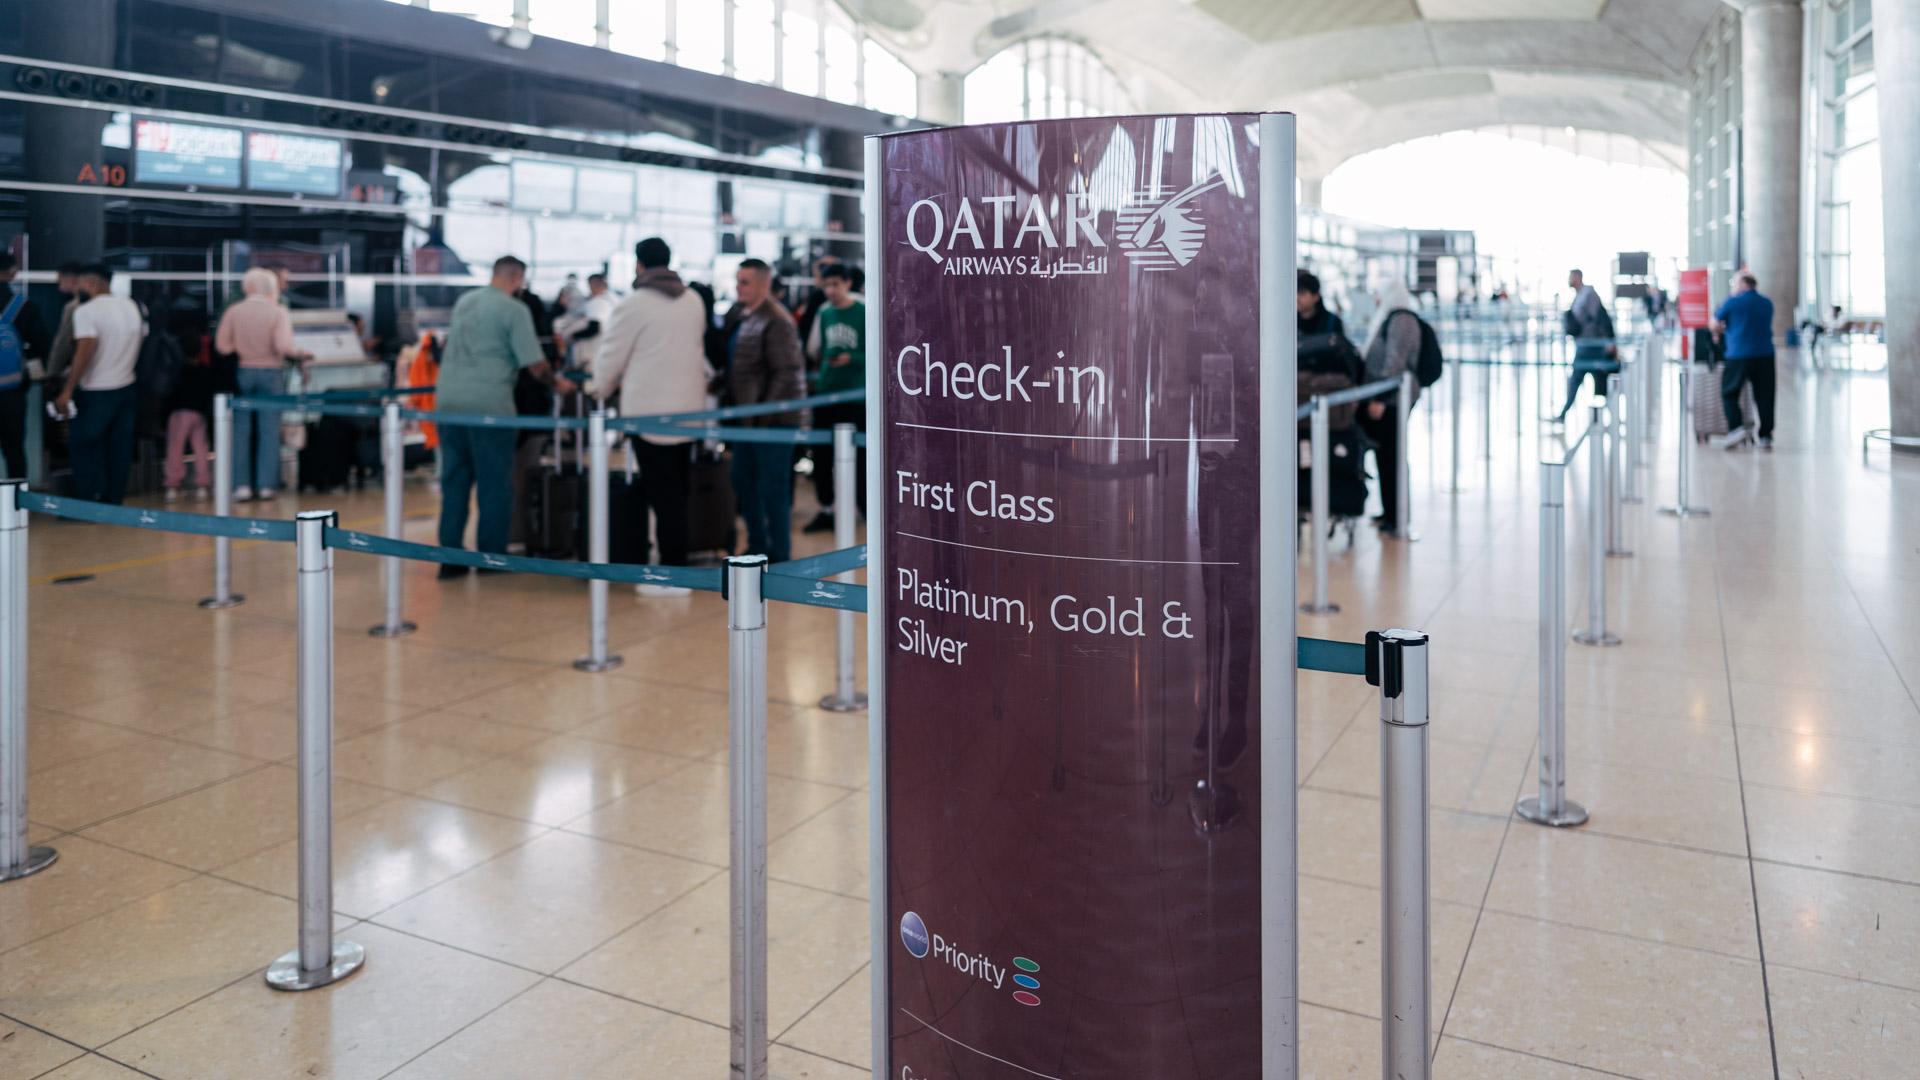 Qatar Airways A320 First Class check-in